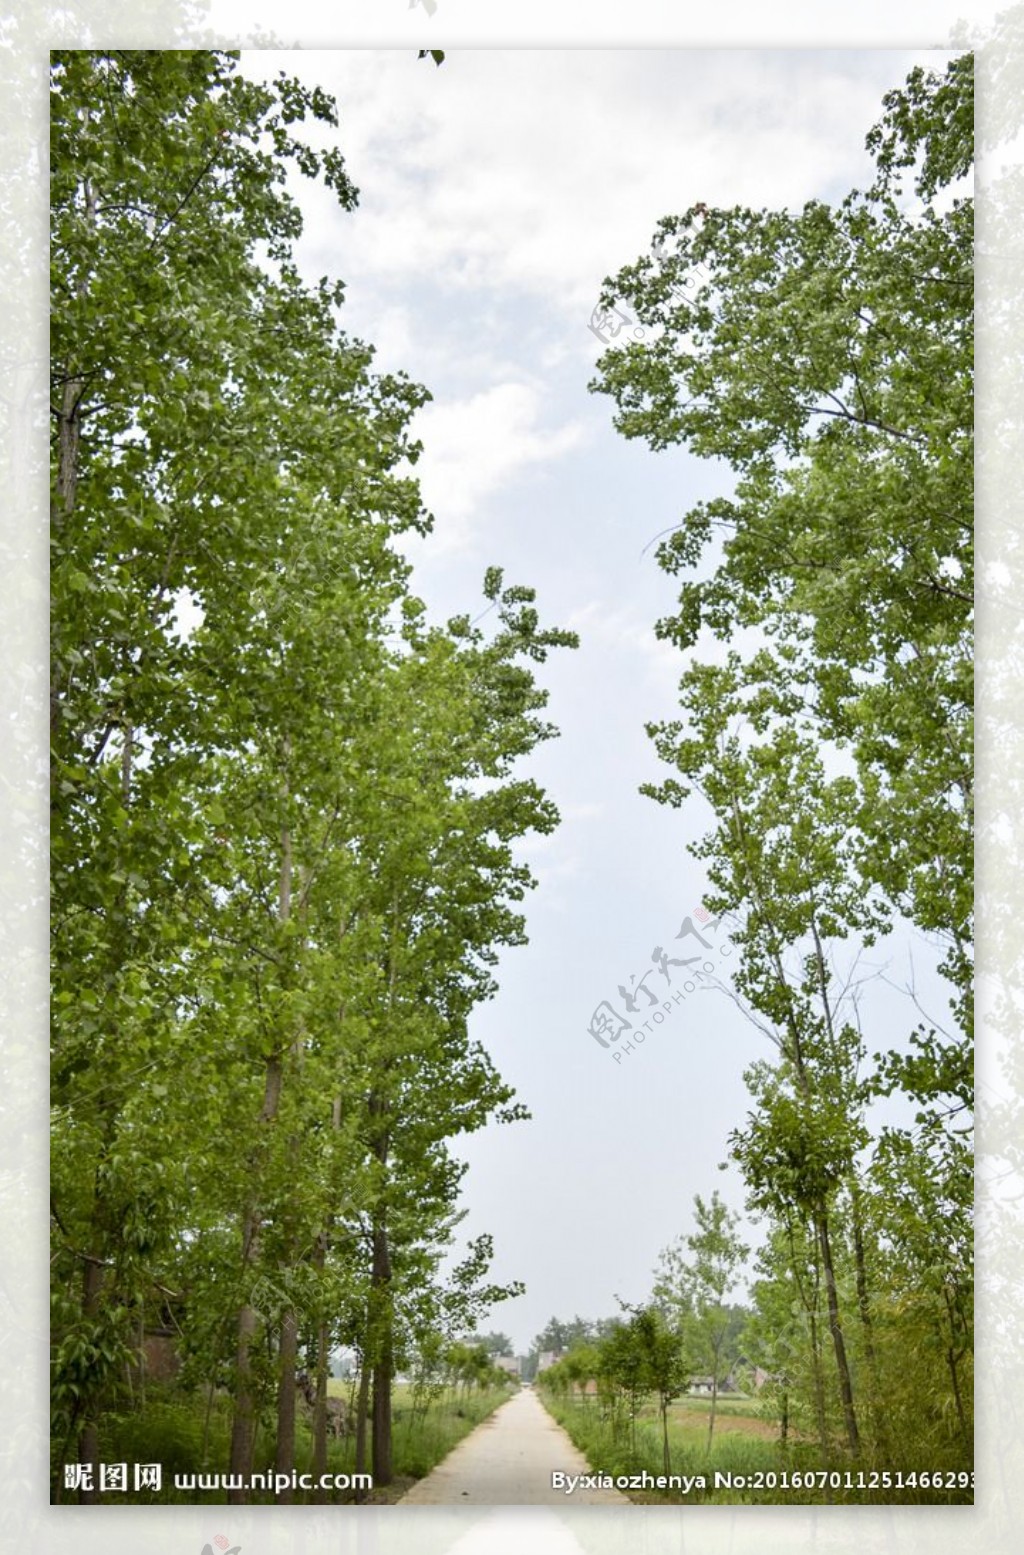 超过 200 张关于“杨树”和“自然”的免费图片 - Pixabay